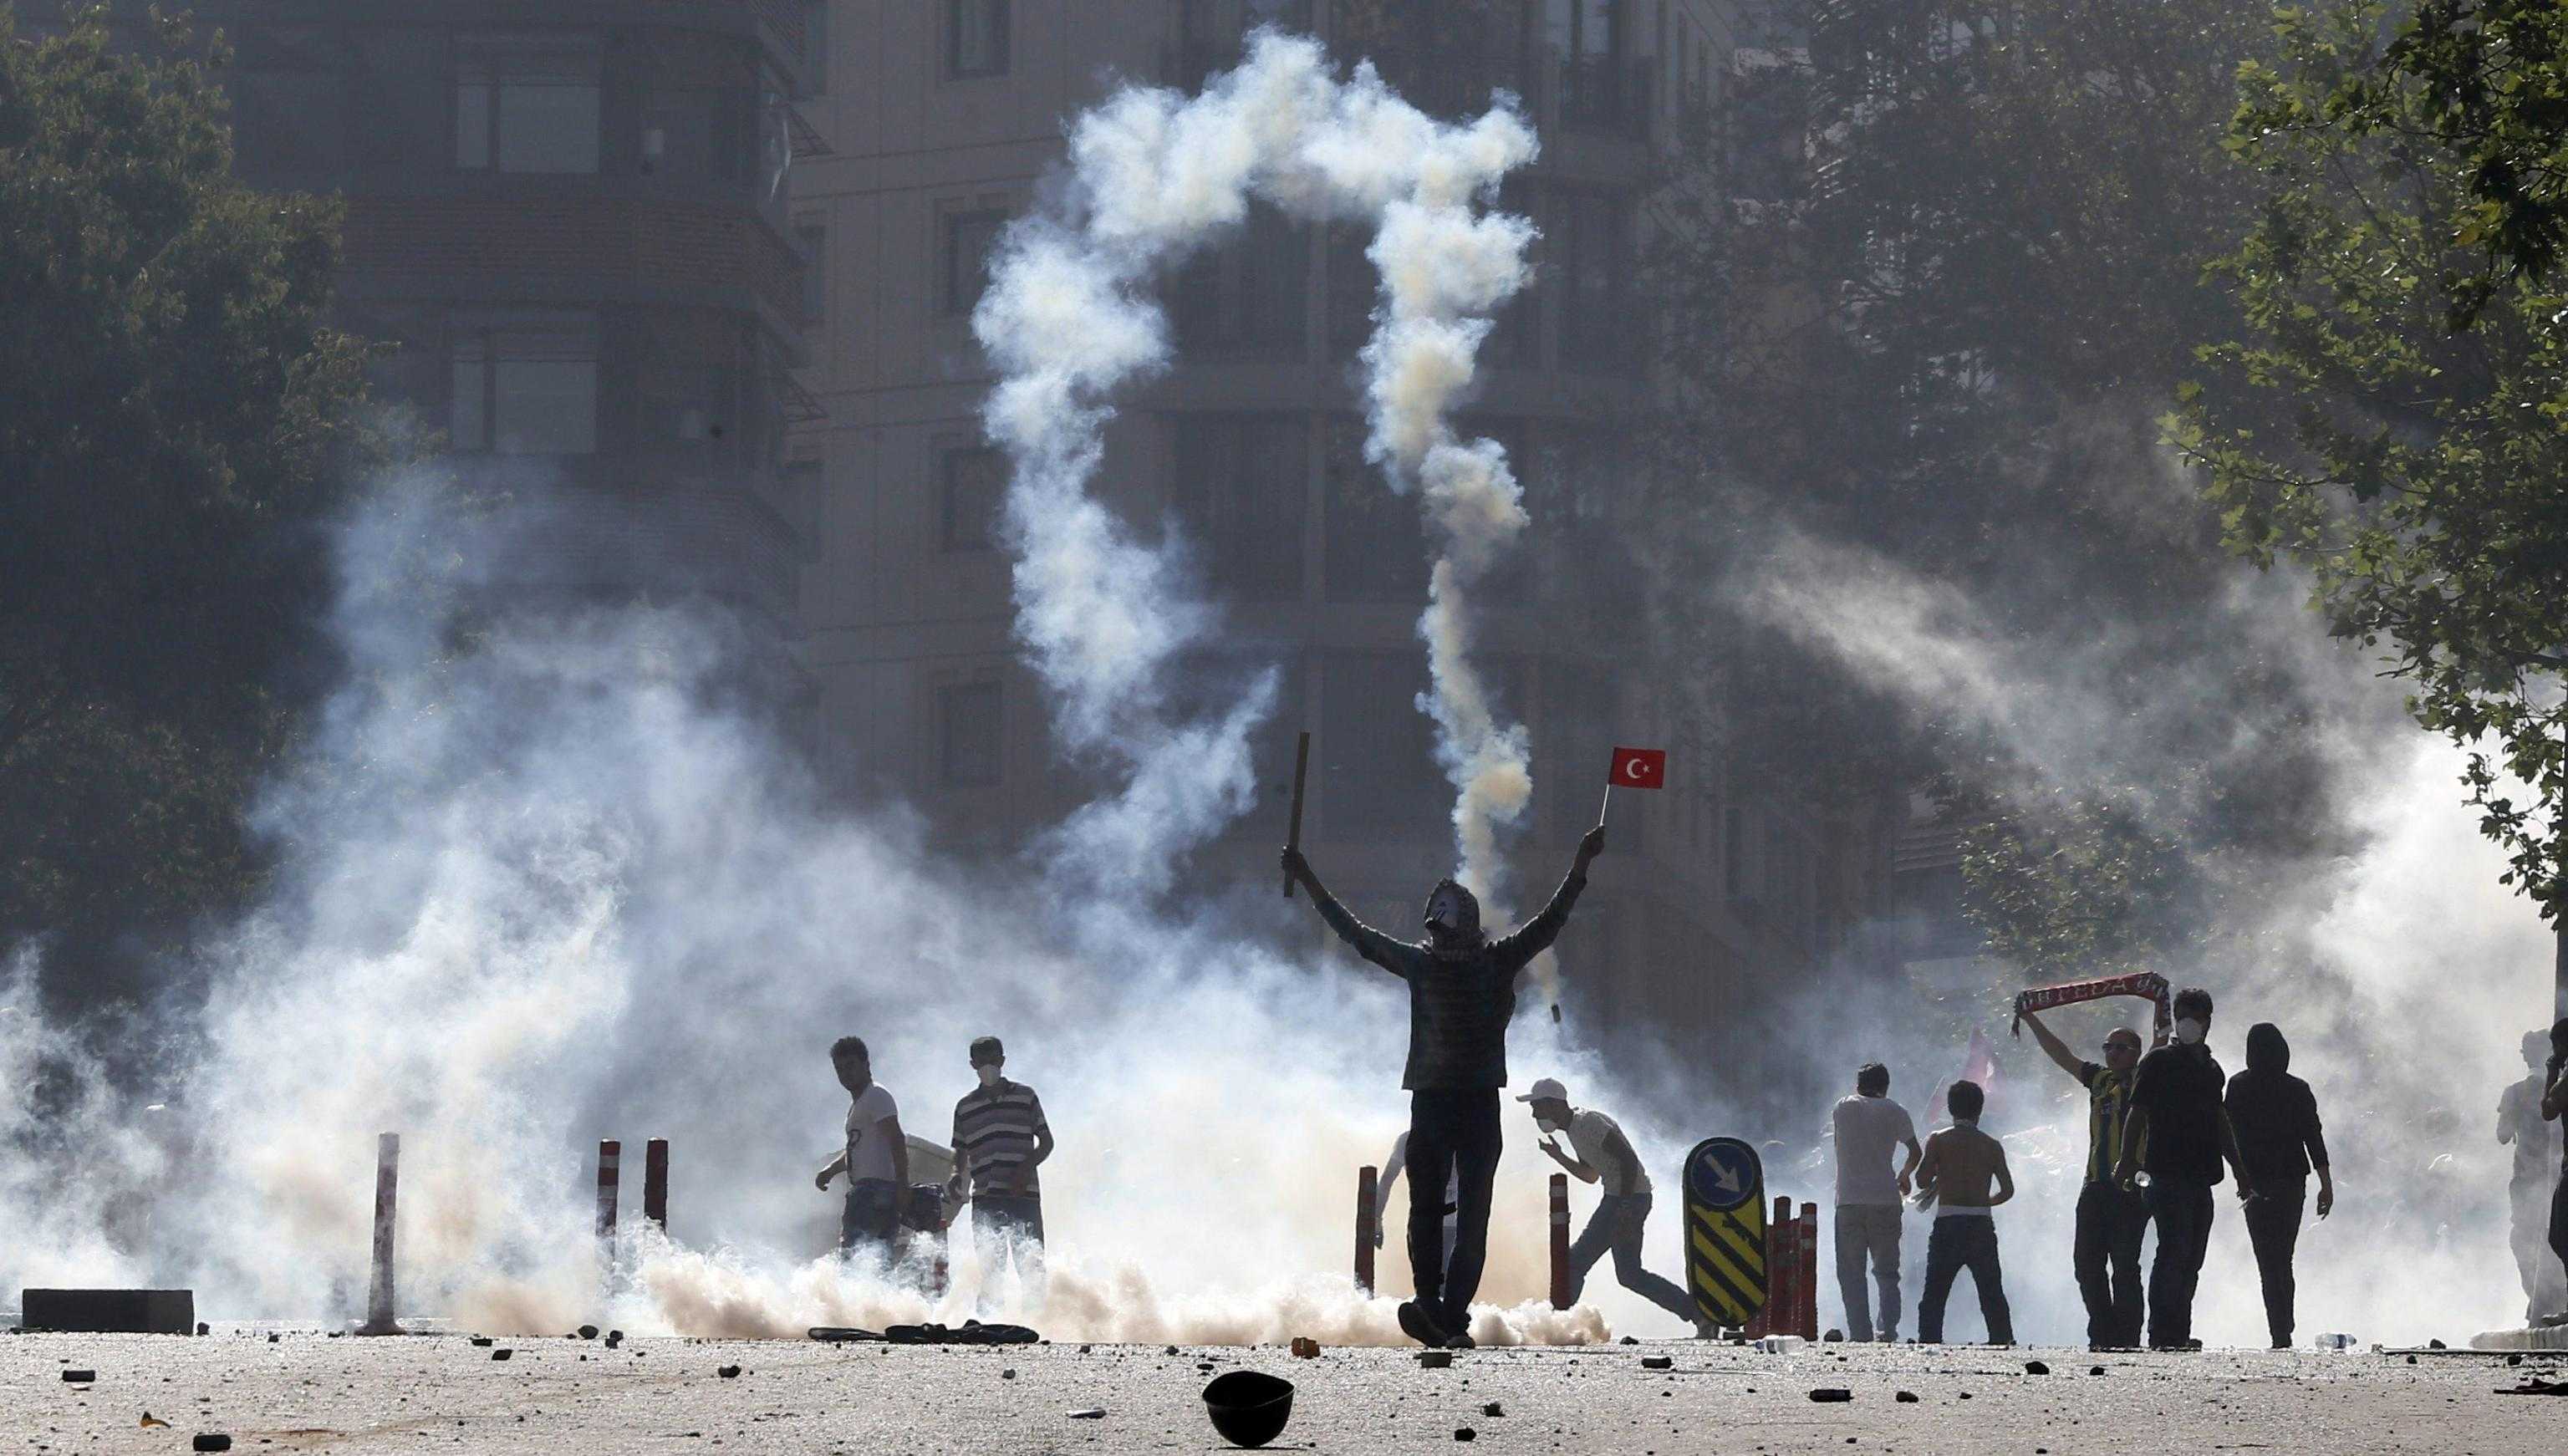 Ferito e fermato dalla polizia un fotografo italiano a Istanbul. Aumenta la tensione in Turchia